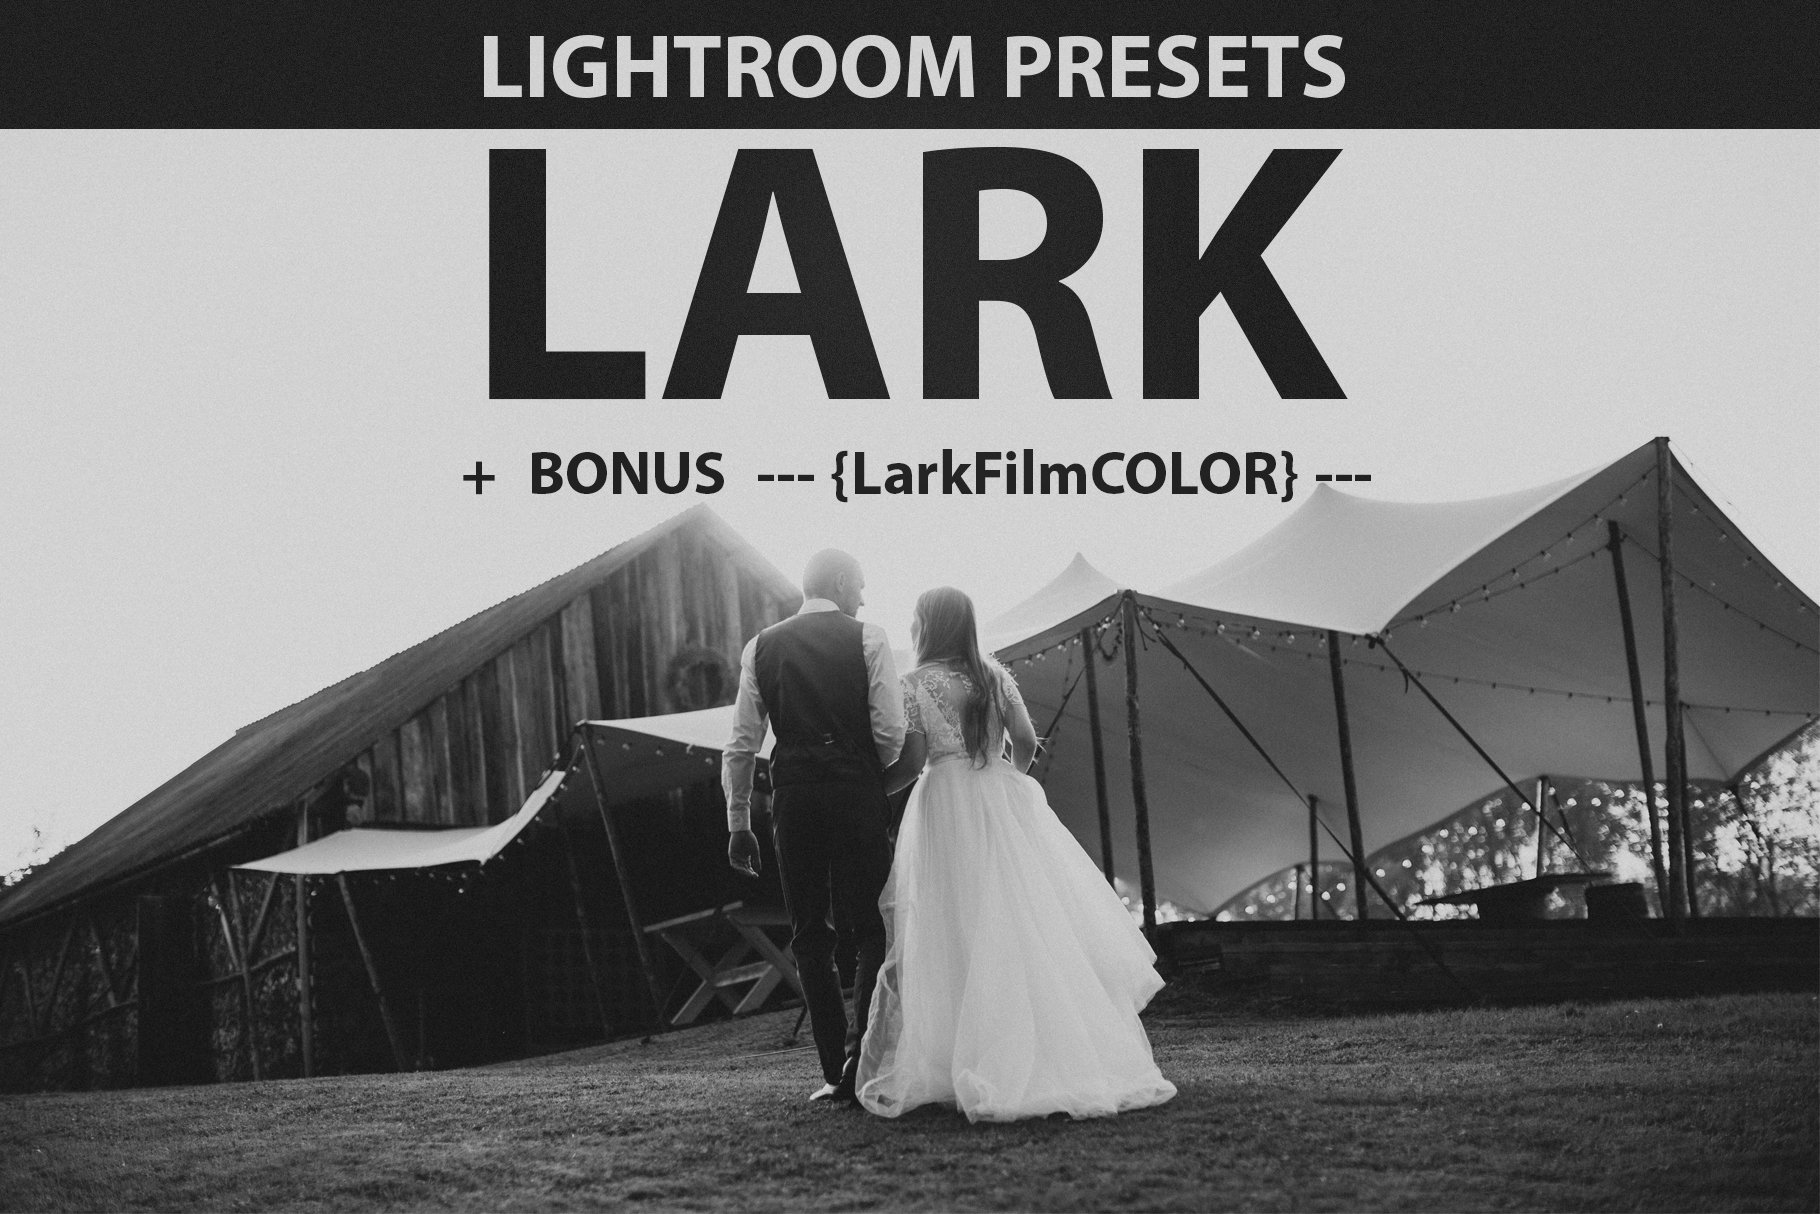 LARK LIGHTROOM PRESETScover image.